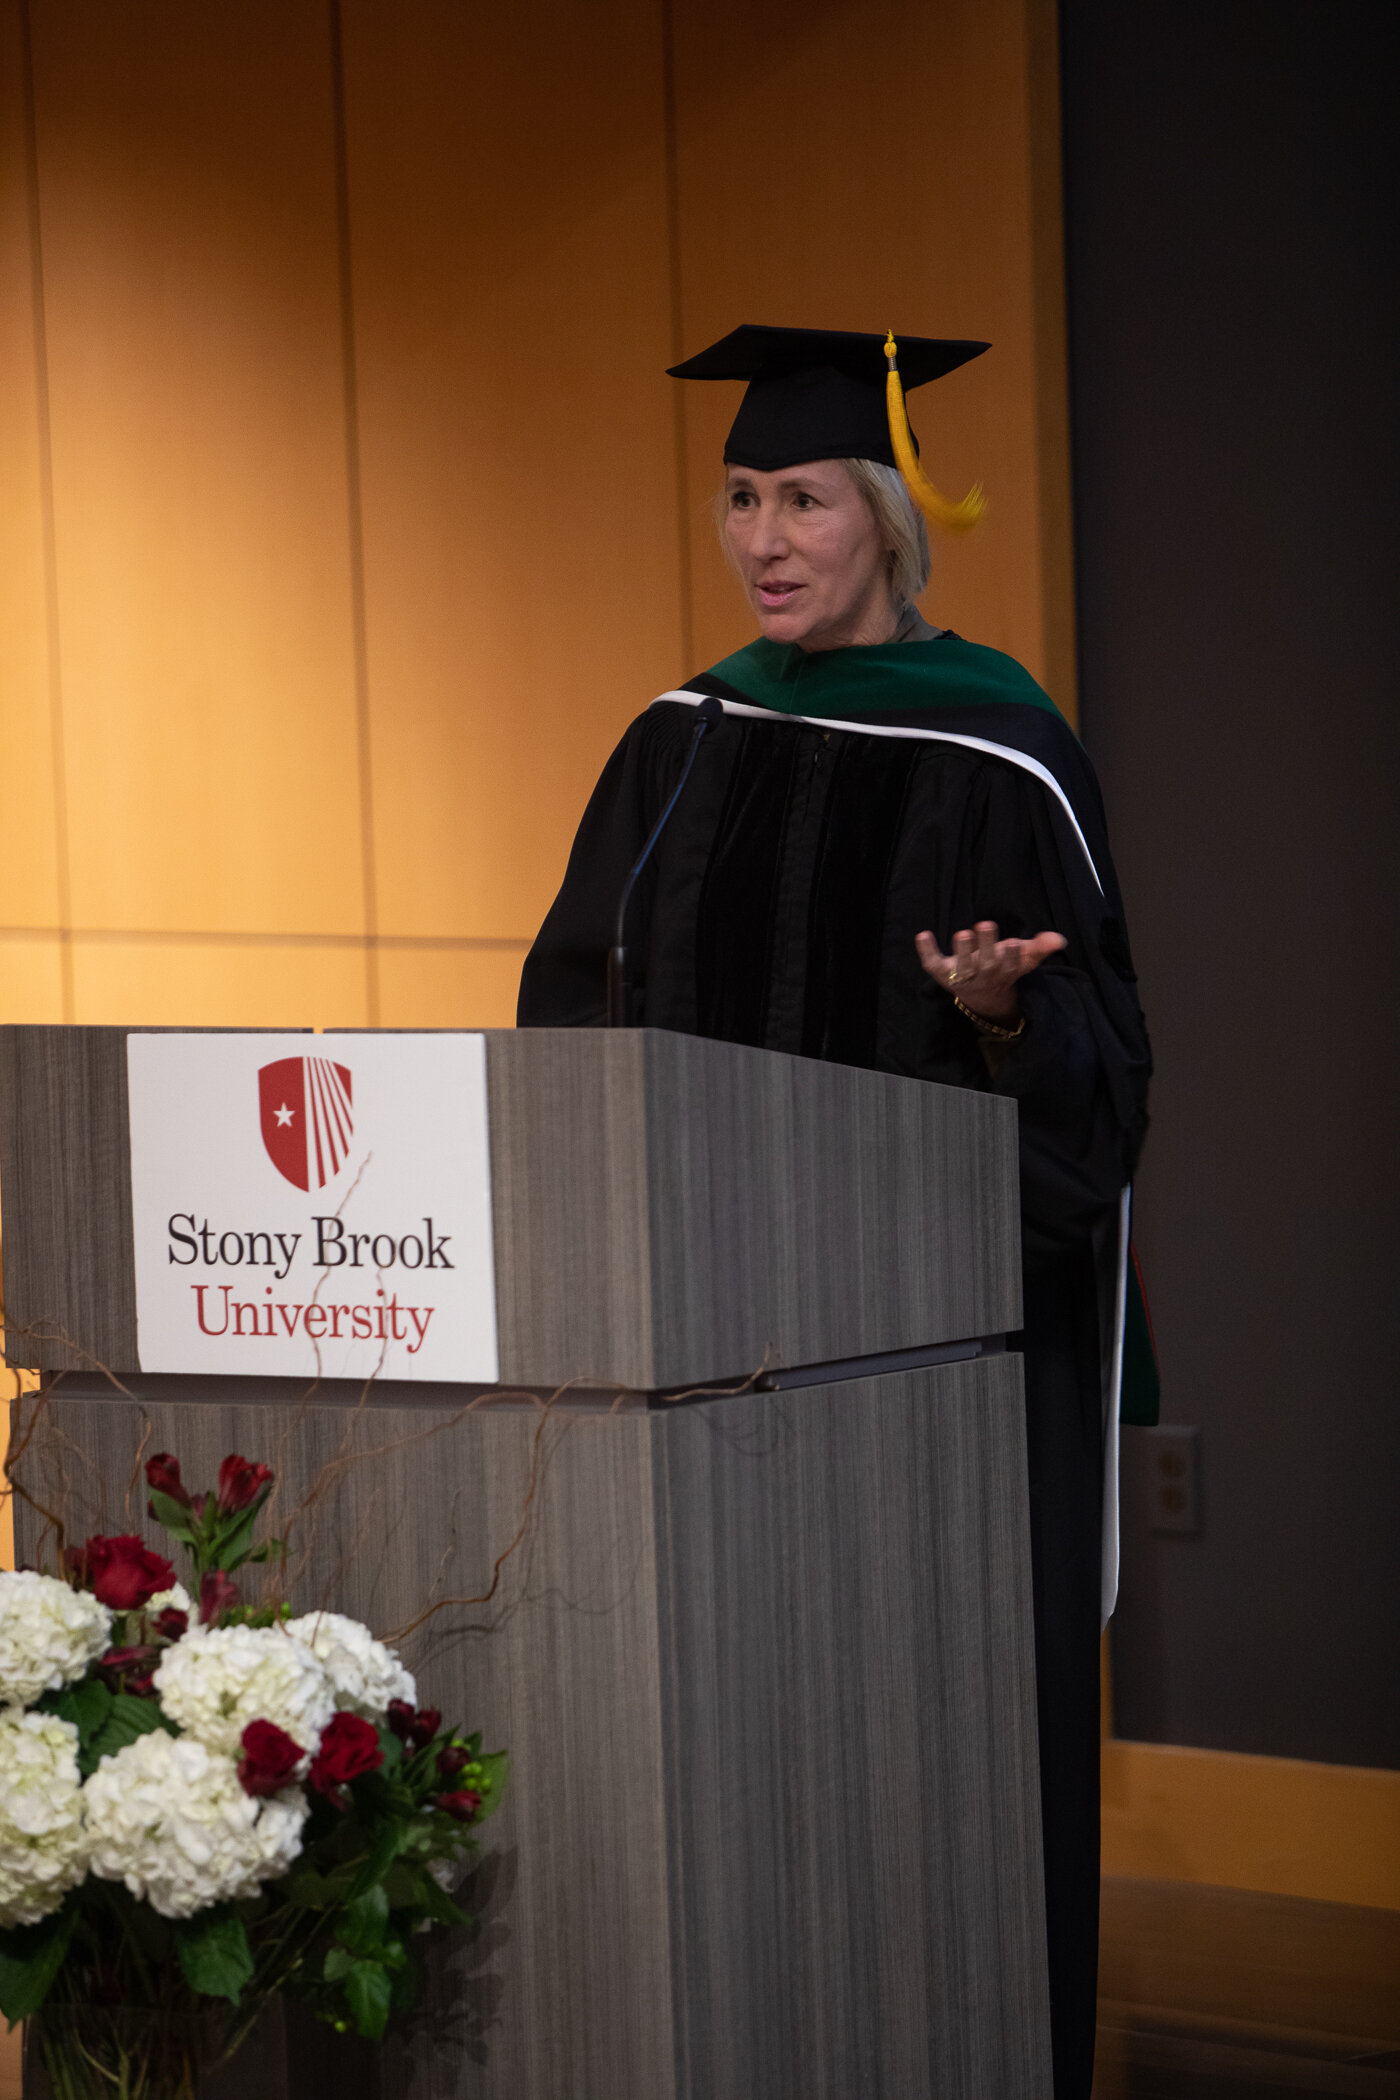  Stony Brook, NY; Stony Brook University Hospital; Investiture Ceremony 2020 